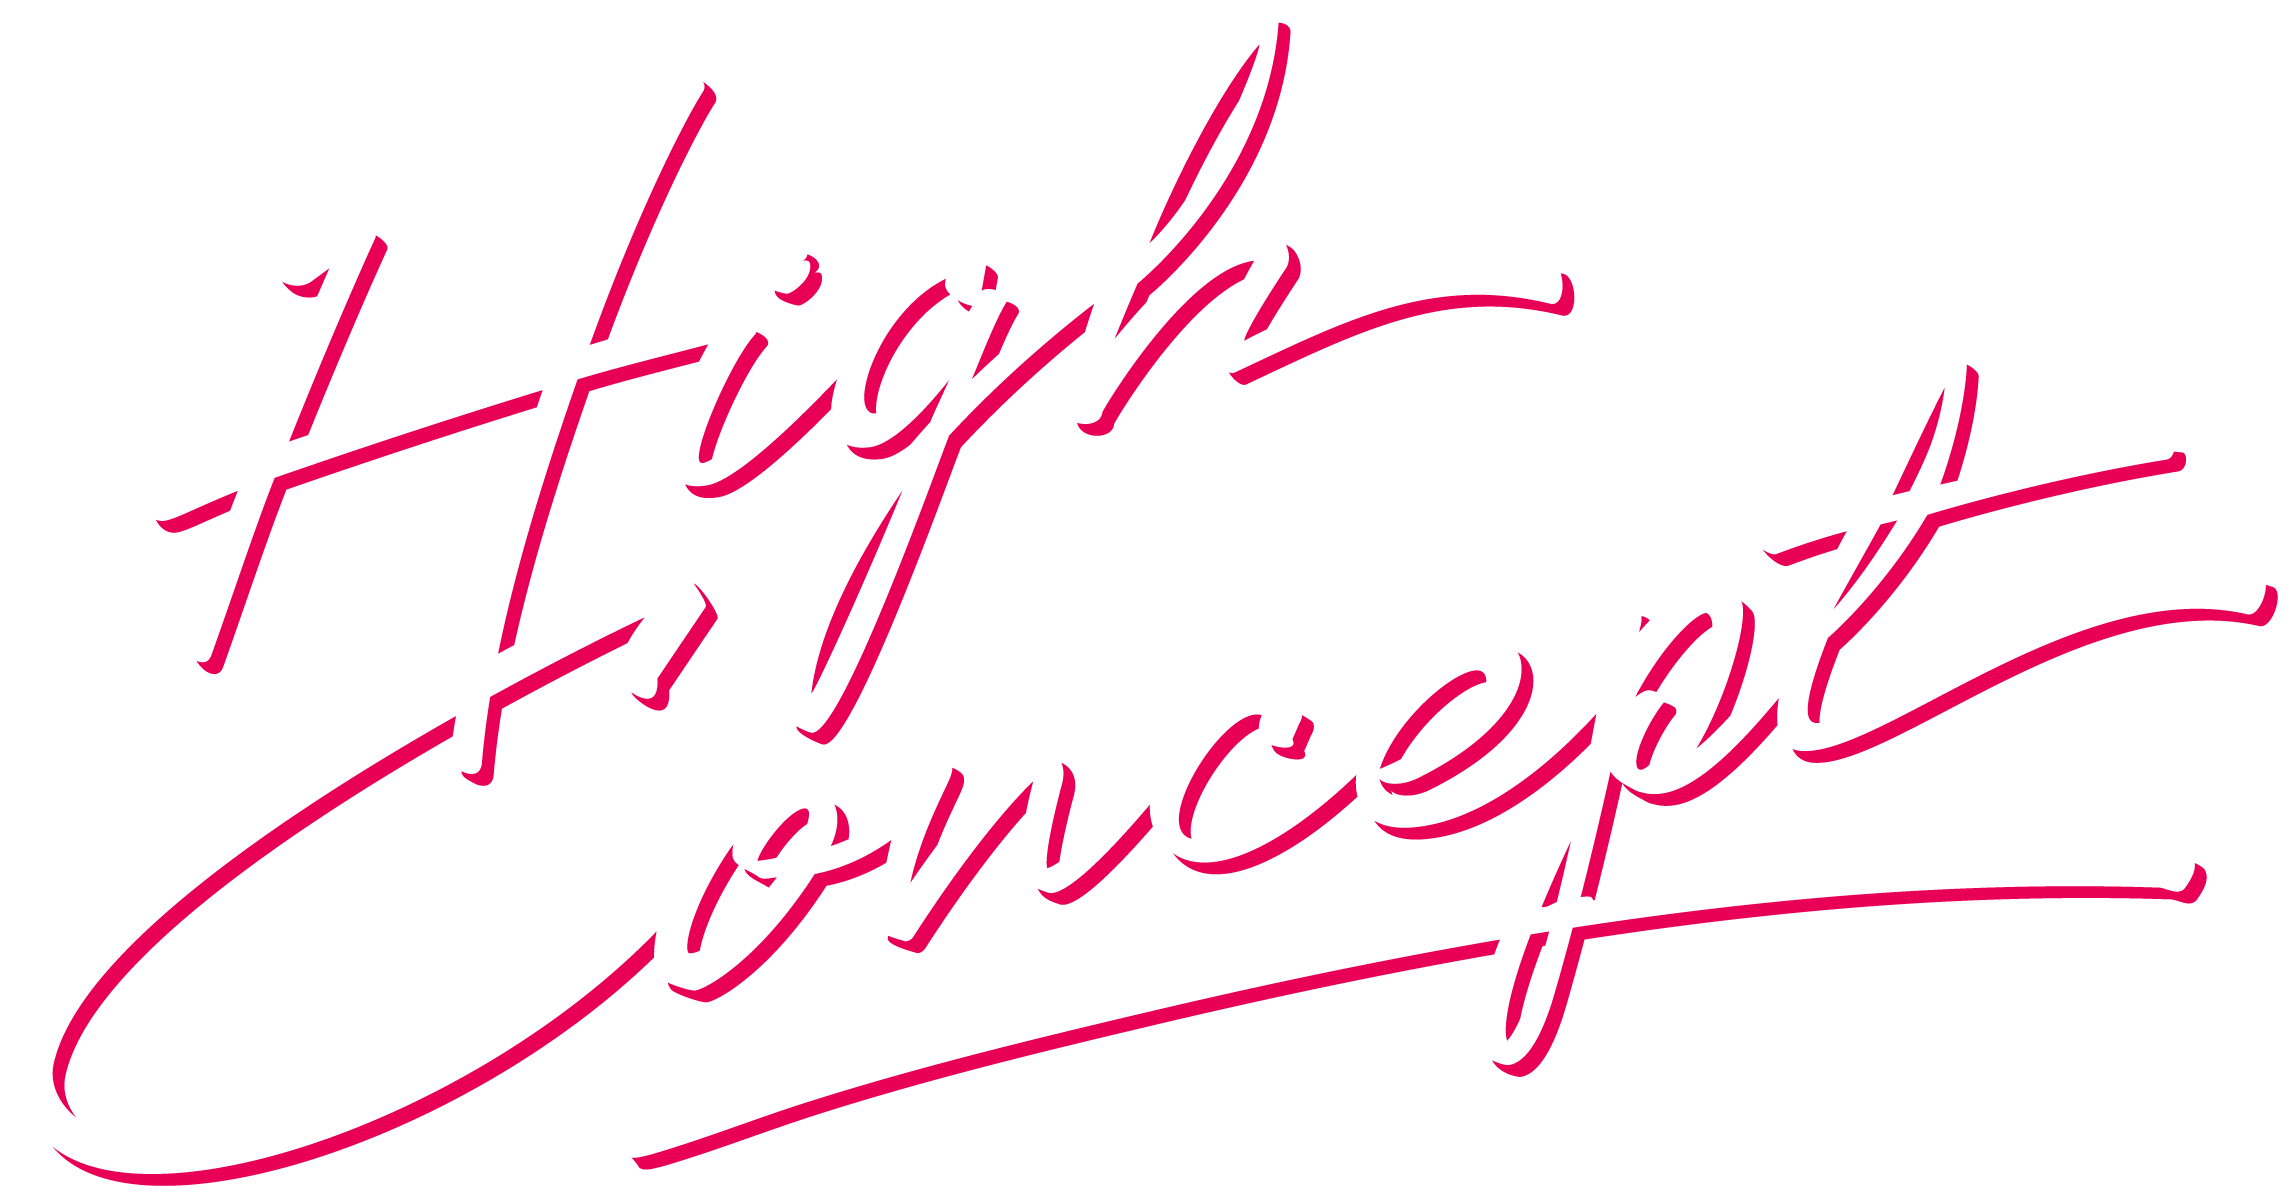 Hign Concept 80s Script Font by Wingsart Studio